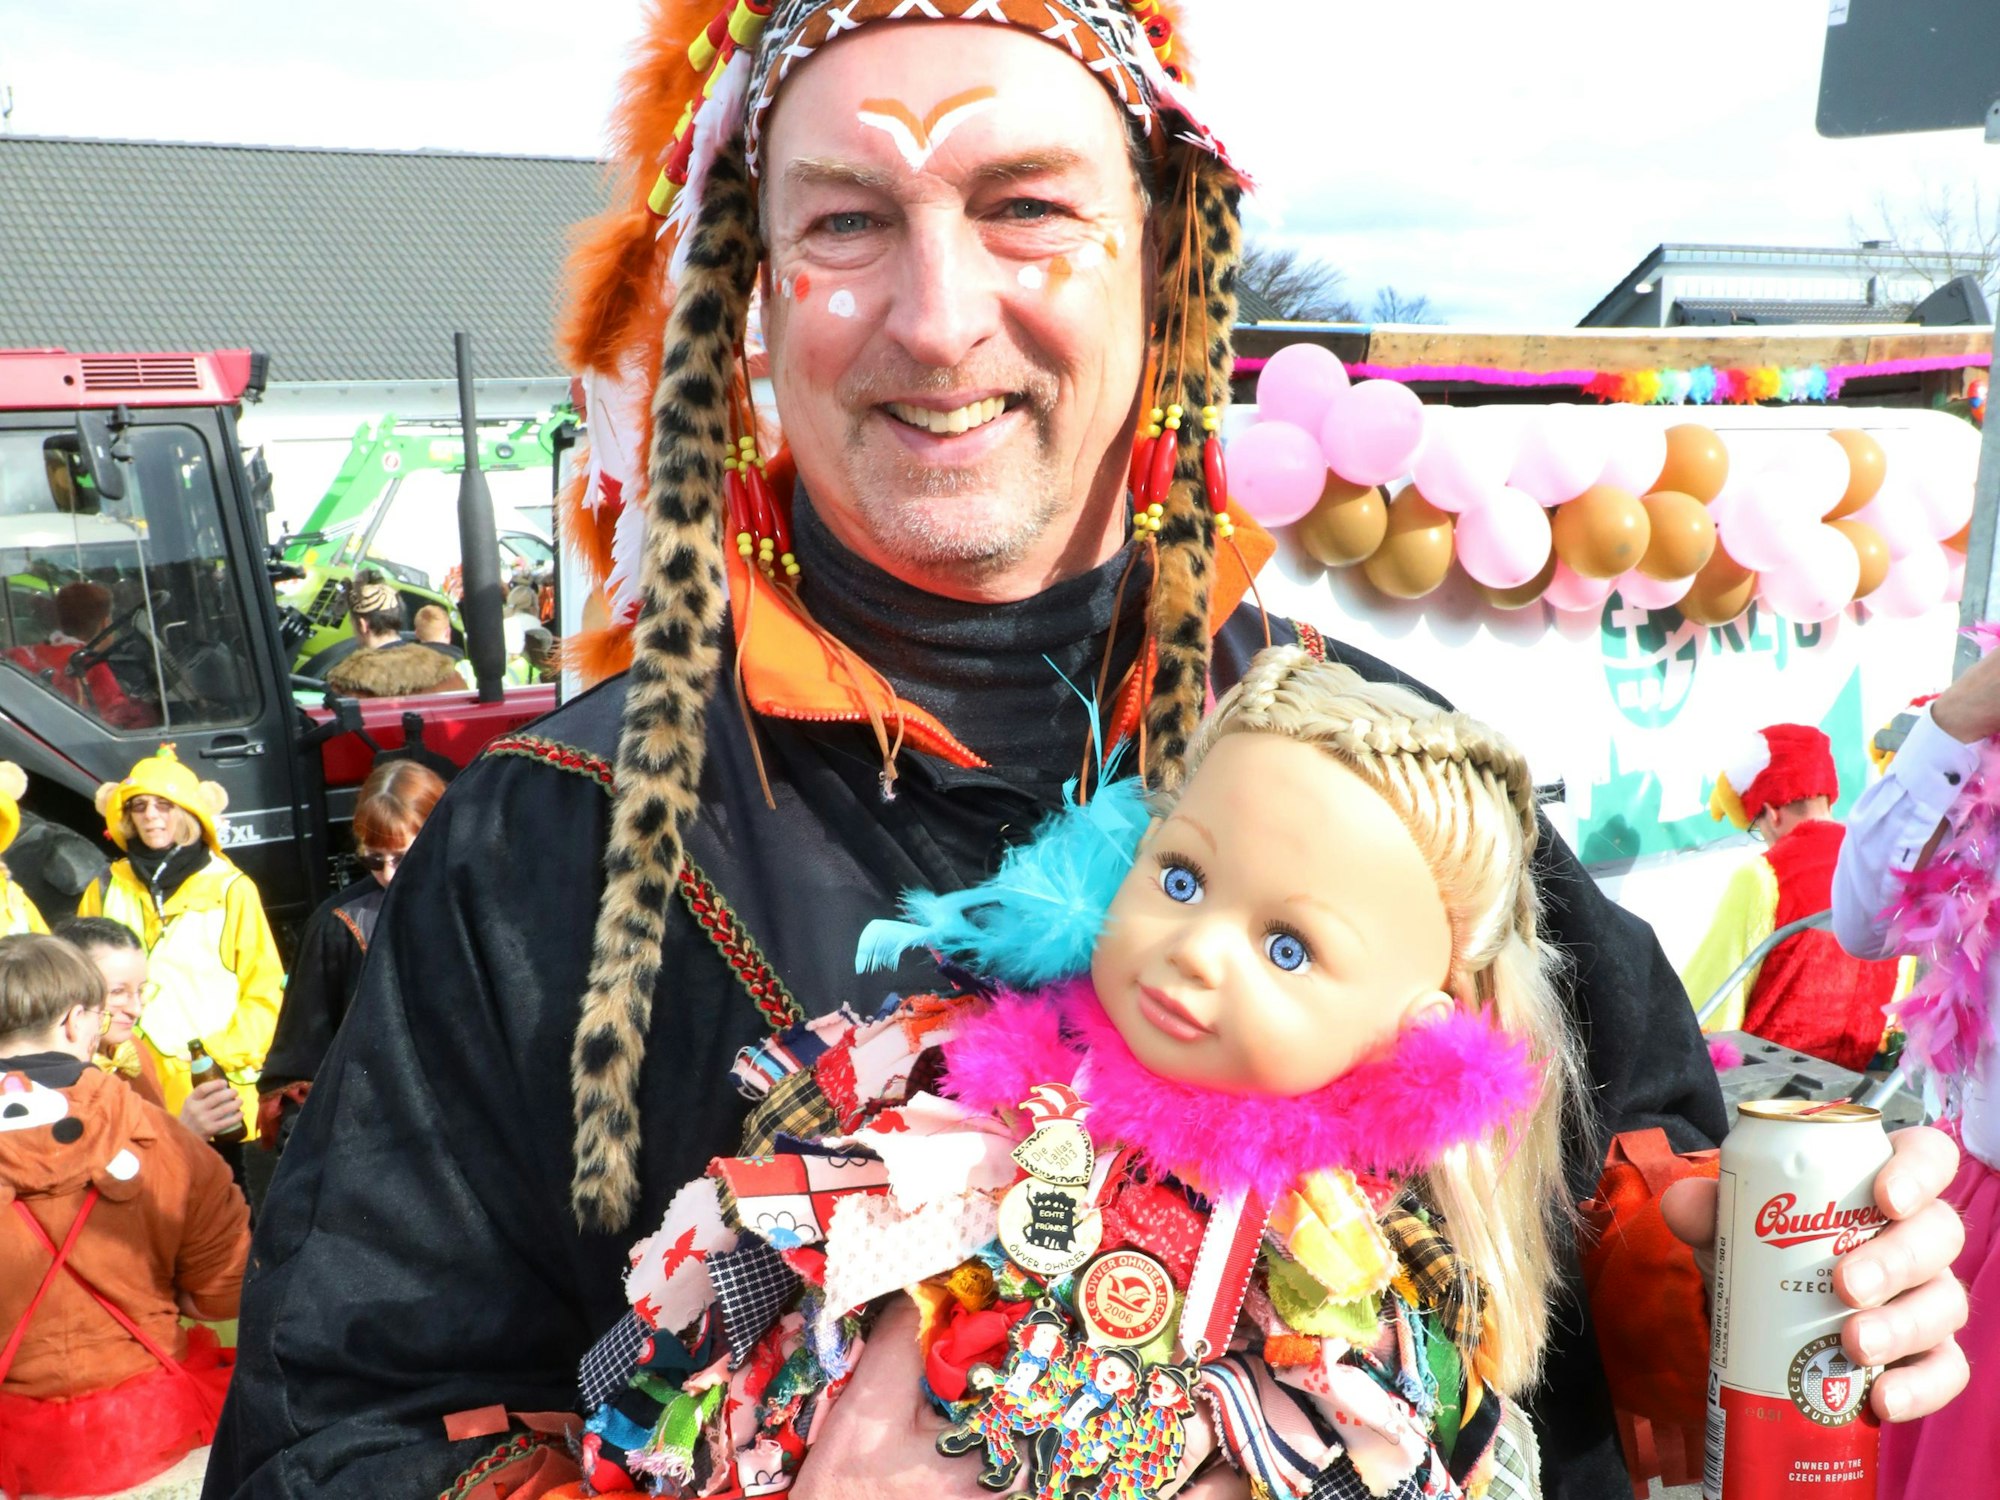 Ein als Indigener verkleideter Mann hält eine kostümierte Puppe im Arm.